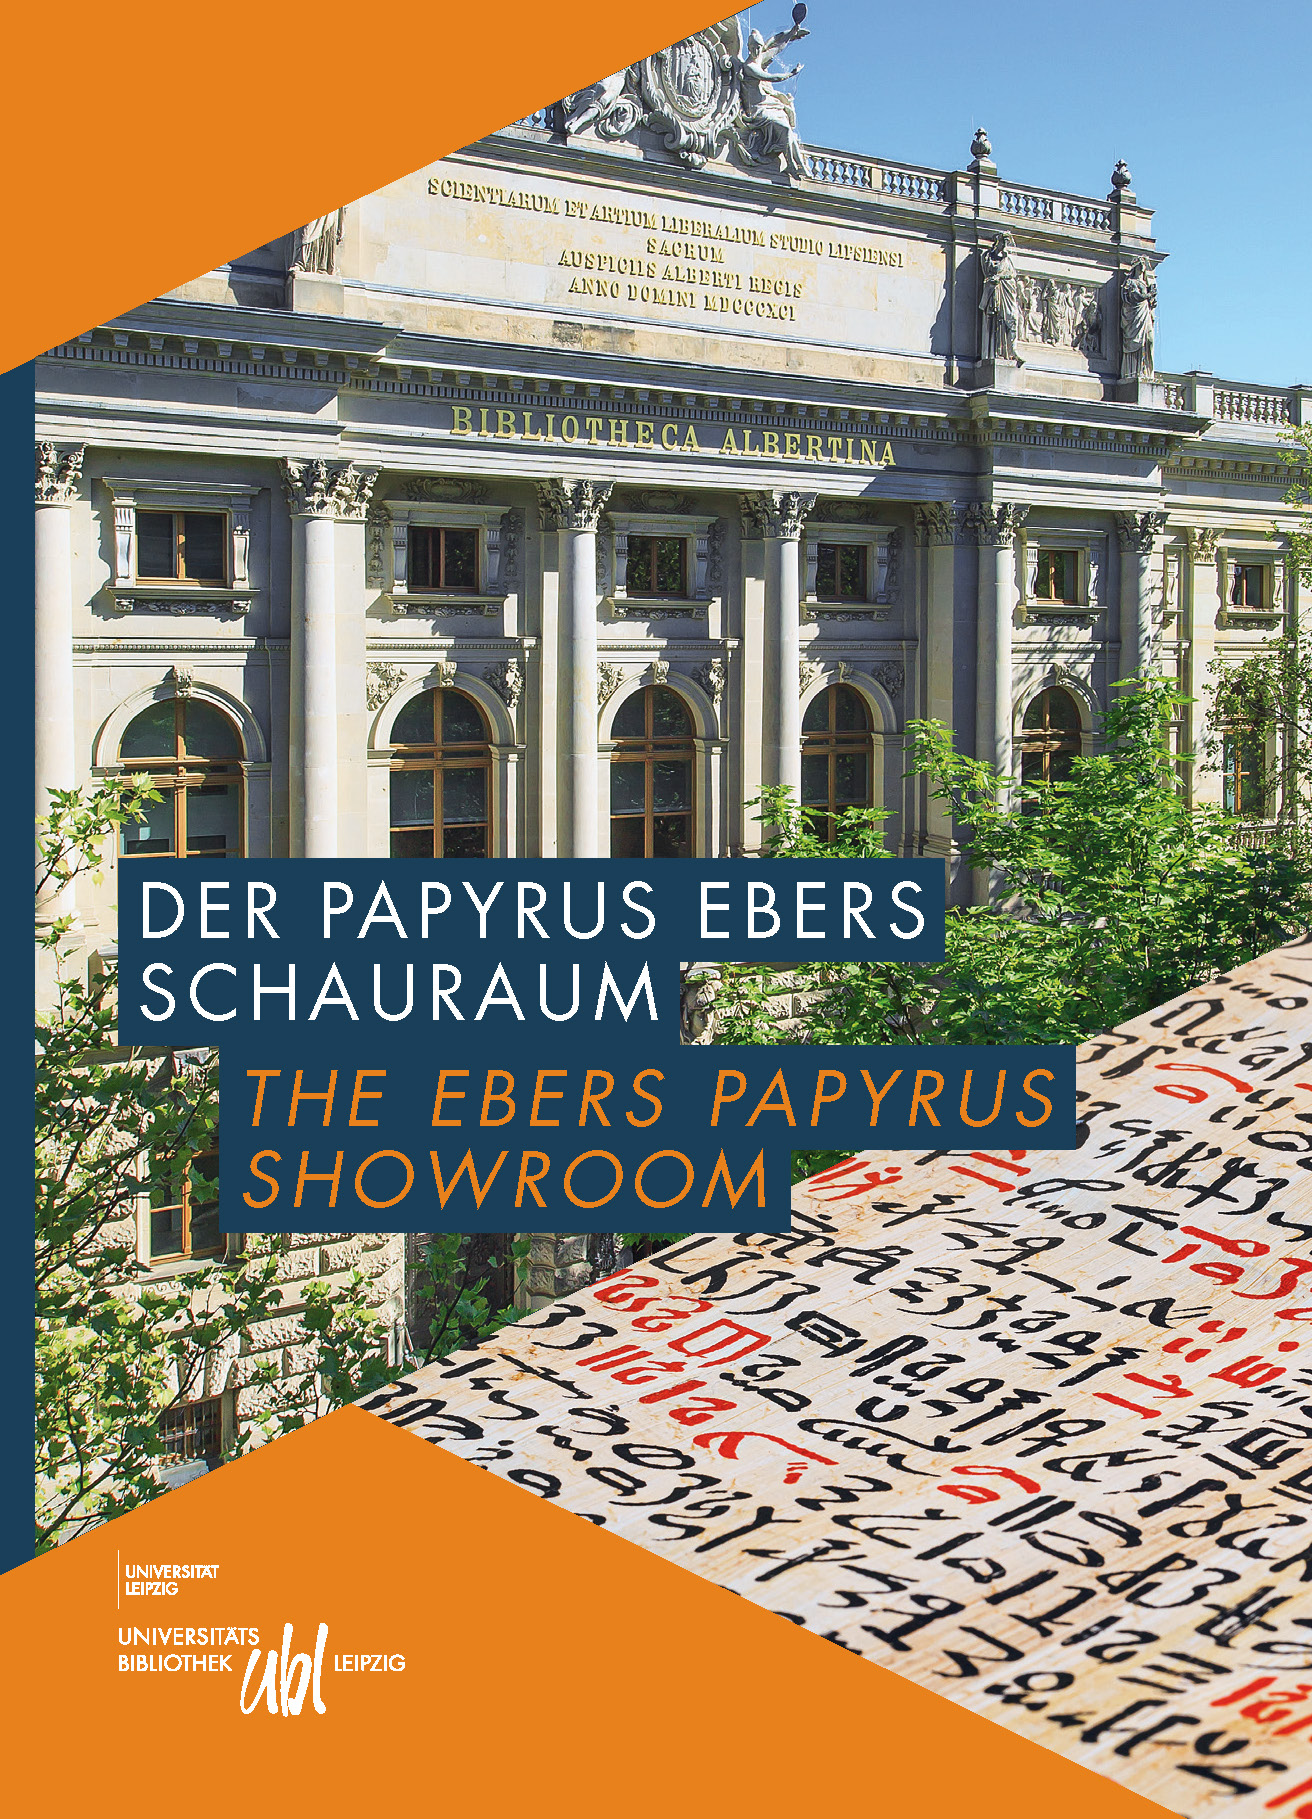 Titelblatt der Broschüre zum Schauraum Papyrus Ebers